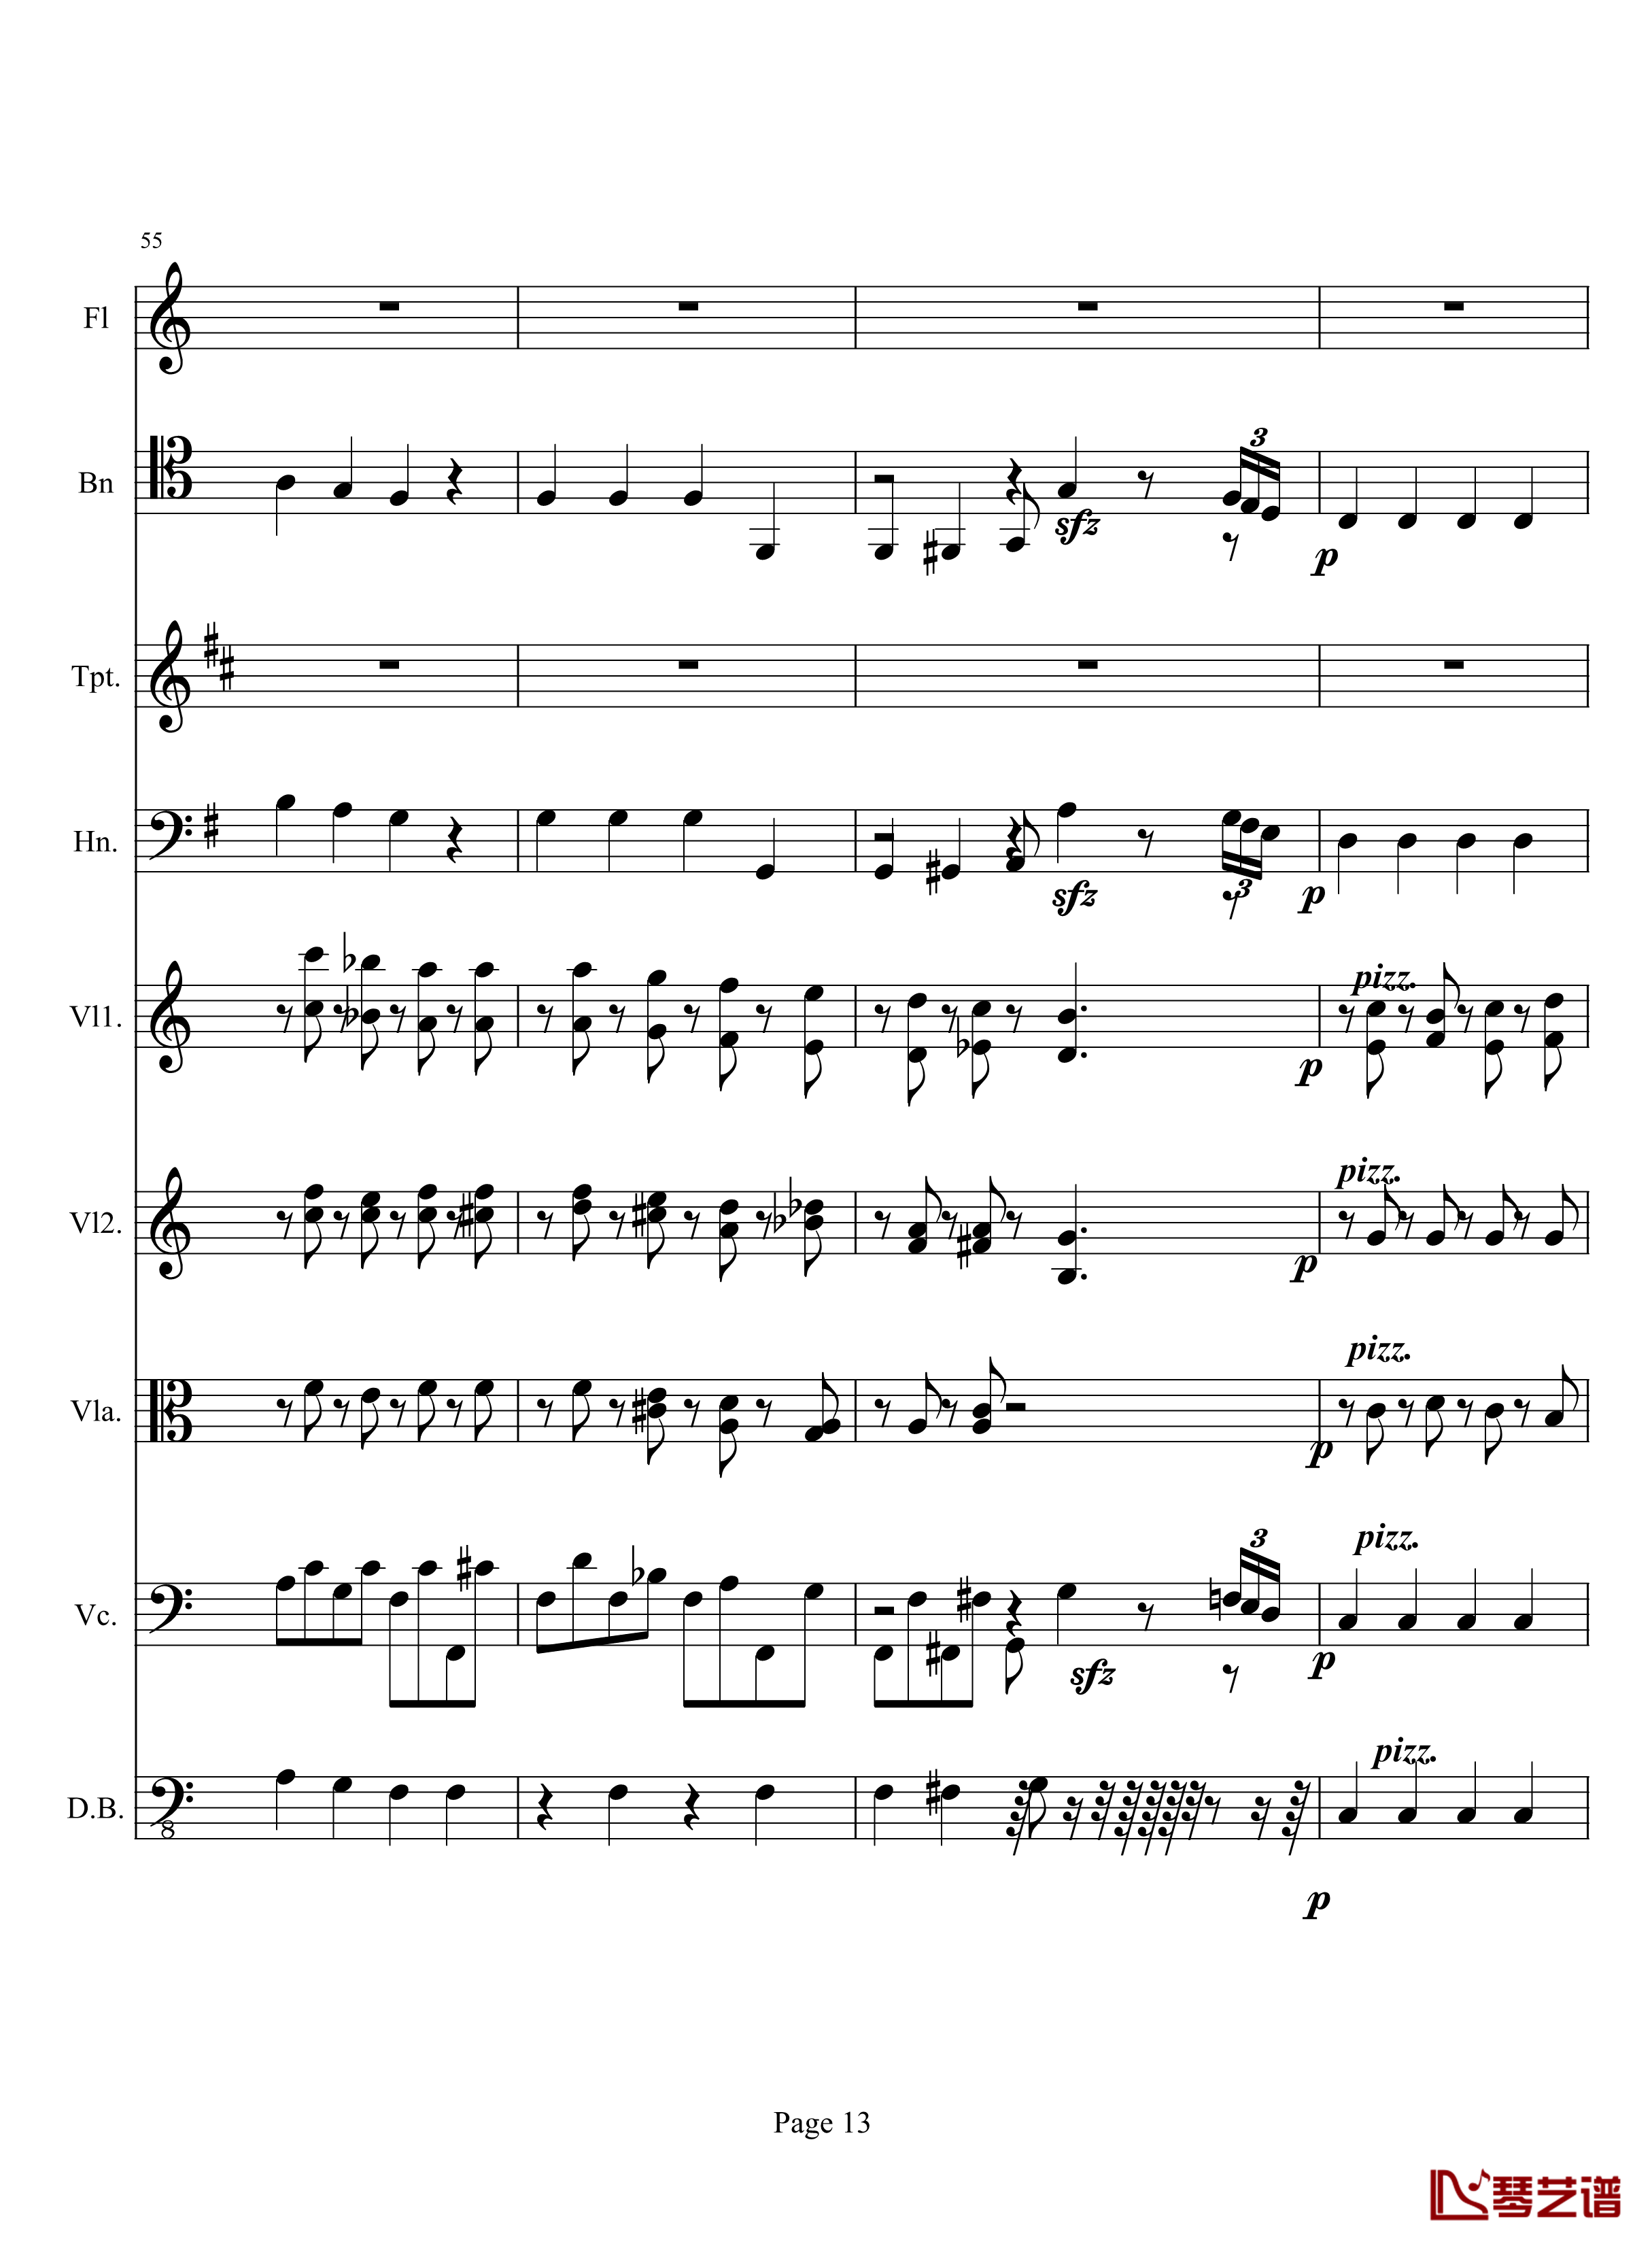 奏鸣曲之交响钢琴谱-第10首-2-贝多芬-beethoven13